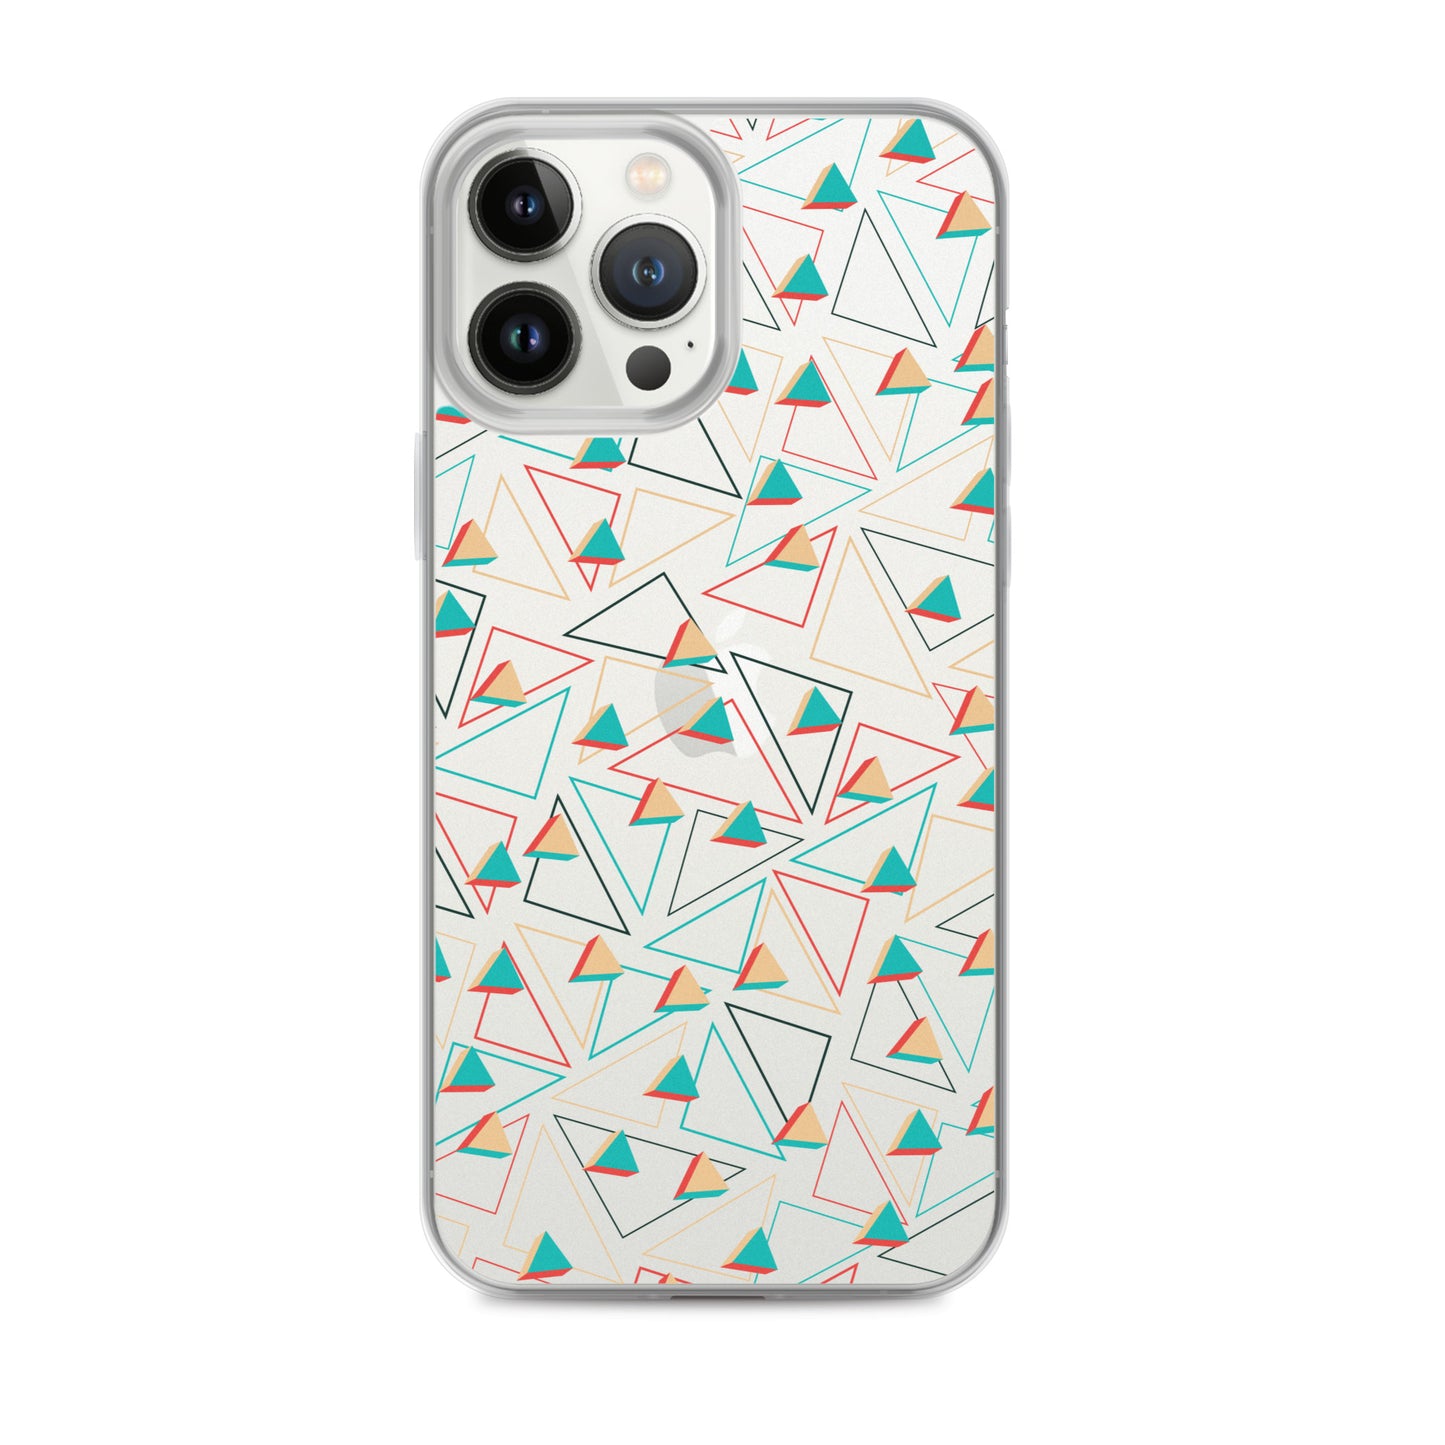 Coque et skin adhésive iPhone transparentes confites triangulaires